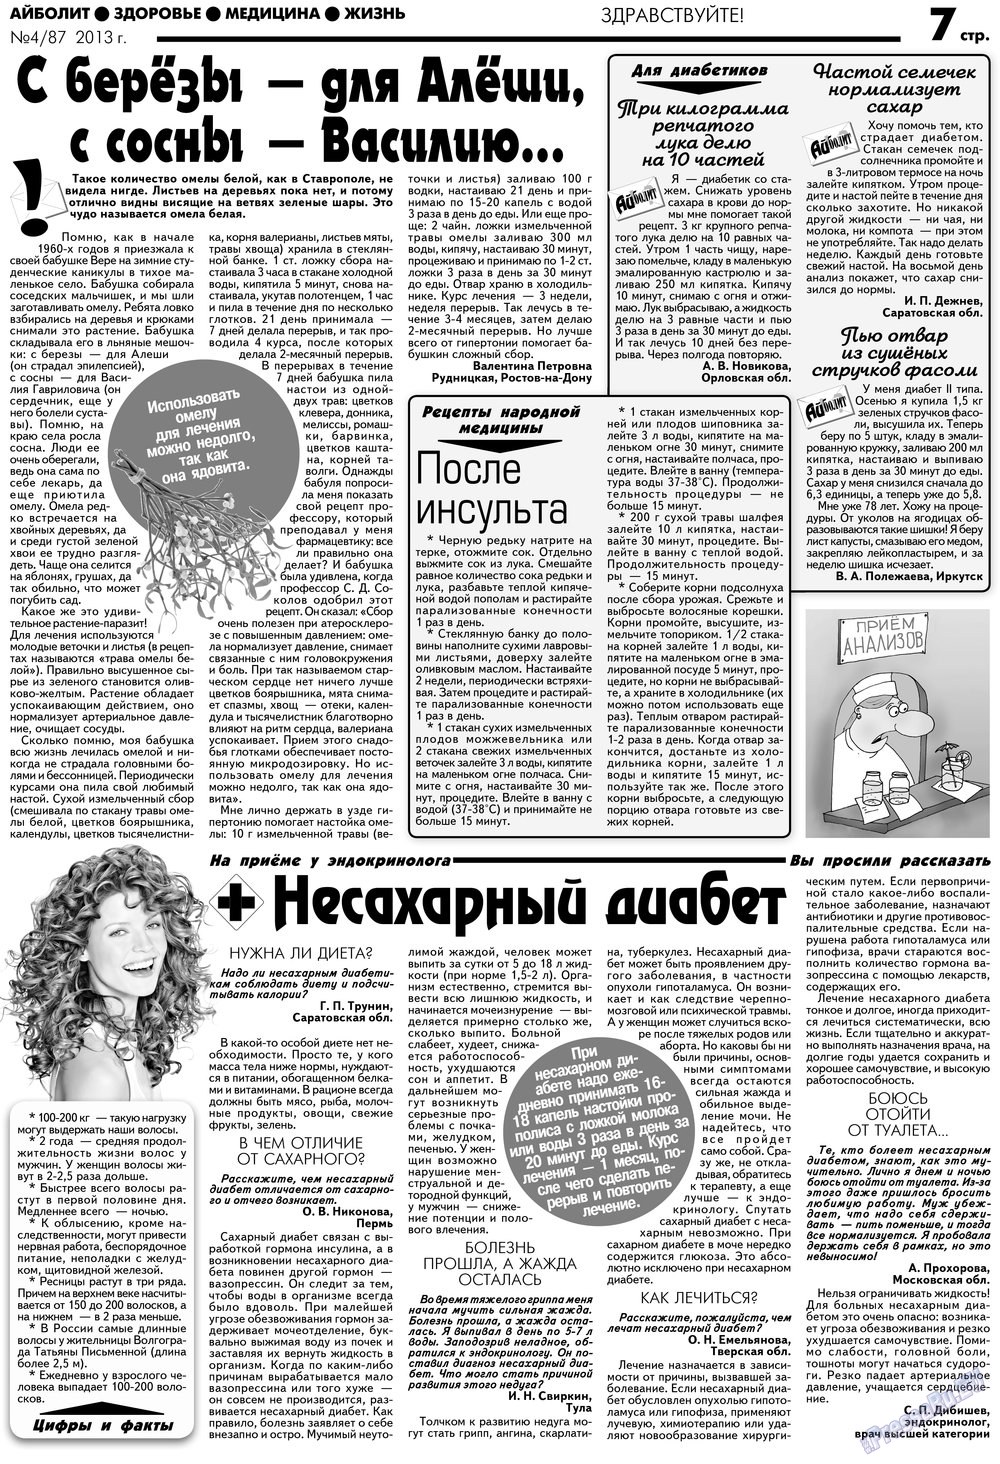 АйБолит, газета. 2013 №4 стр.7